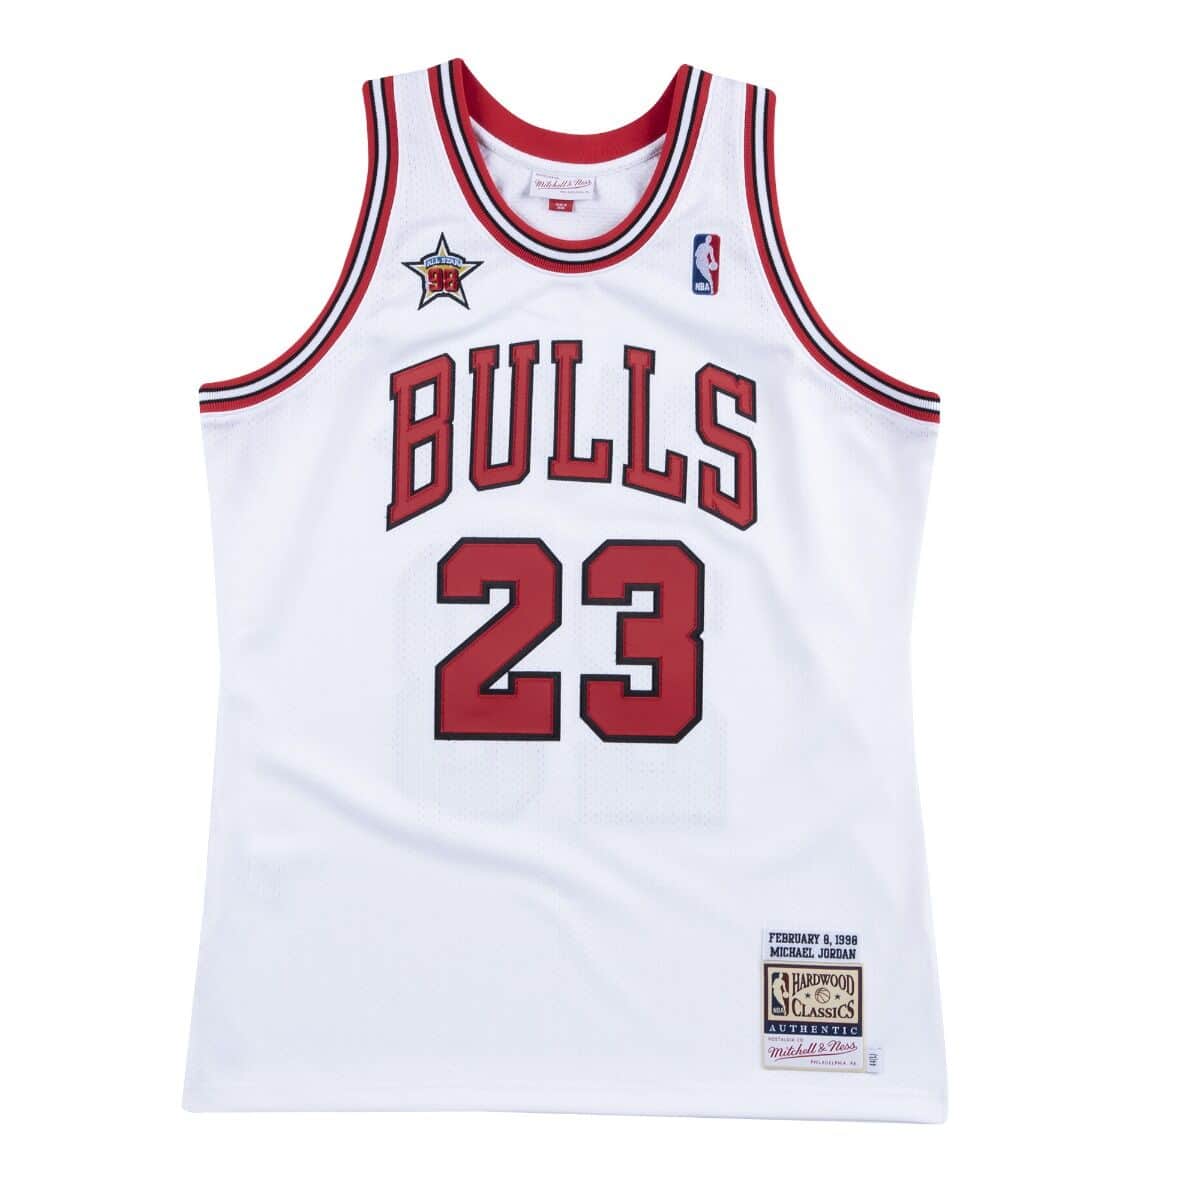 Authentic Jersey Chicago Bulls 1998-99 Michael Jordans